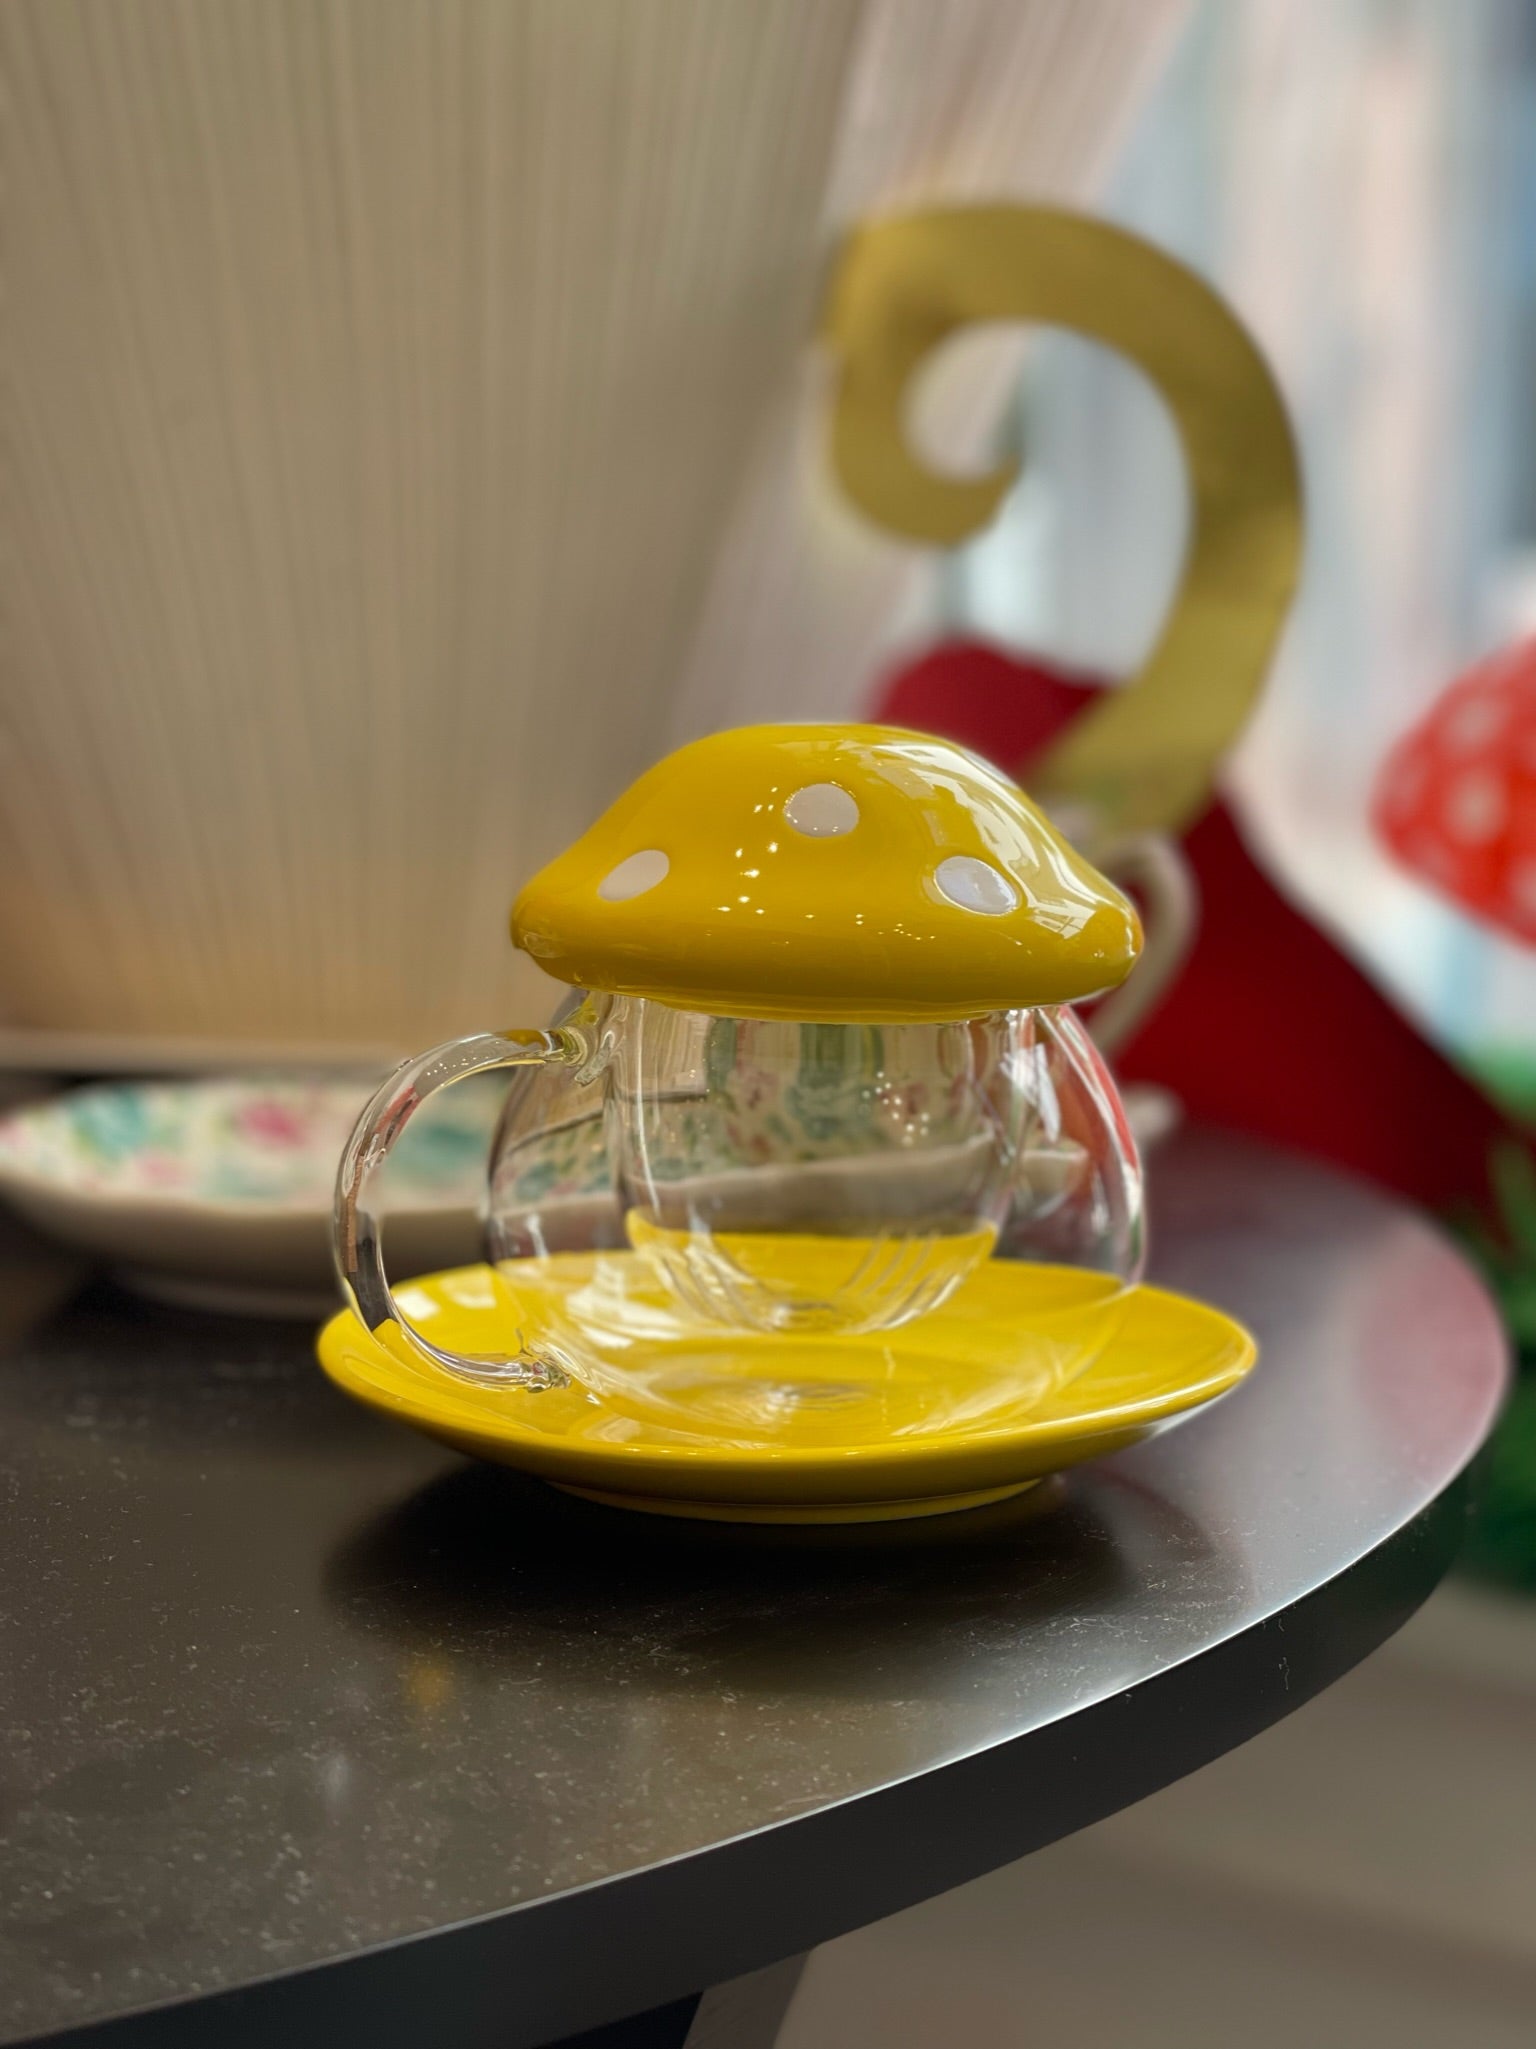  HEMOTON Mushroom Jar Glass Tea Cup with Infuser